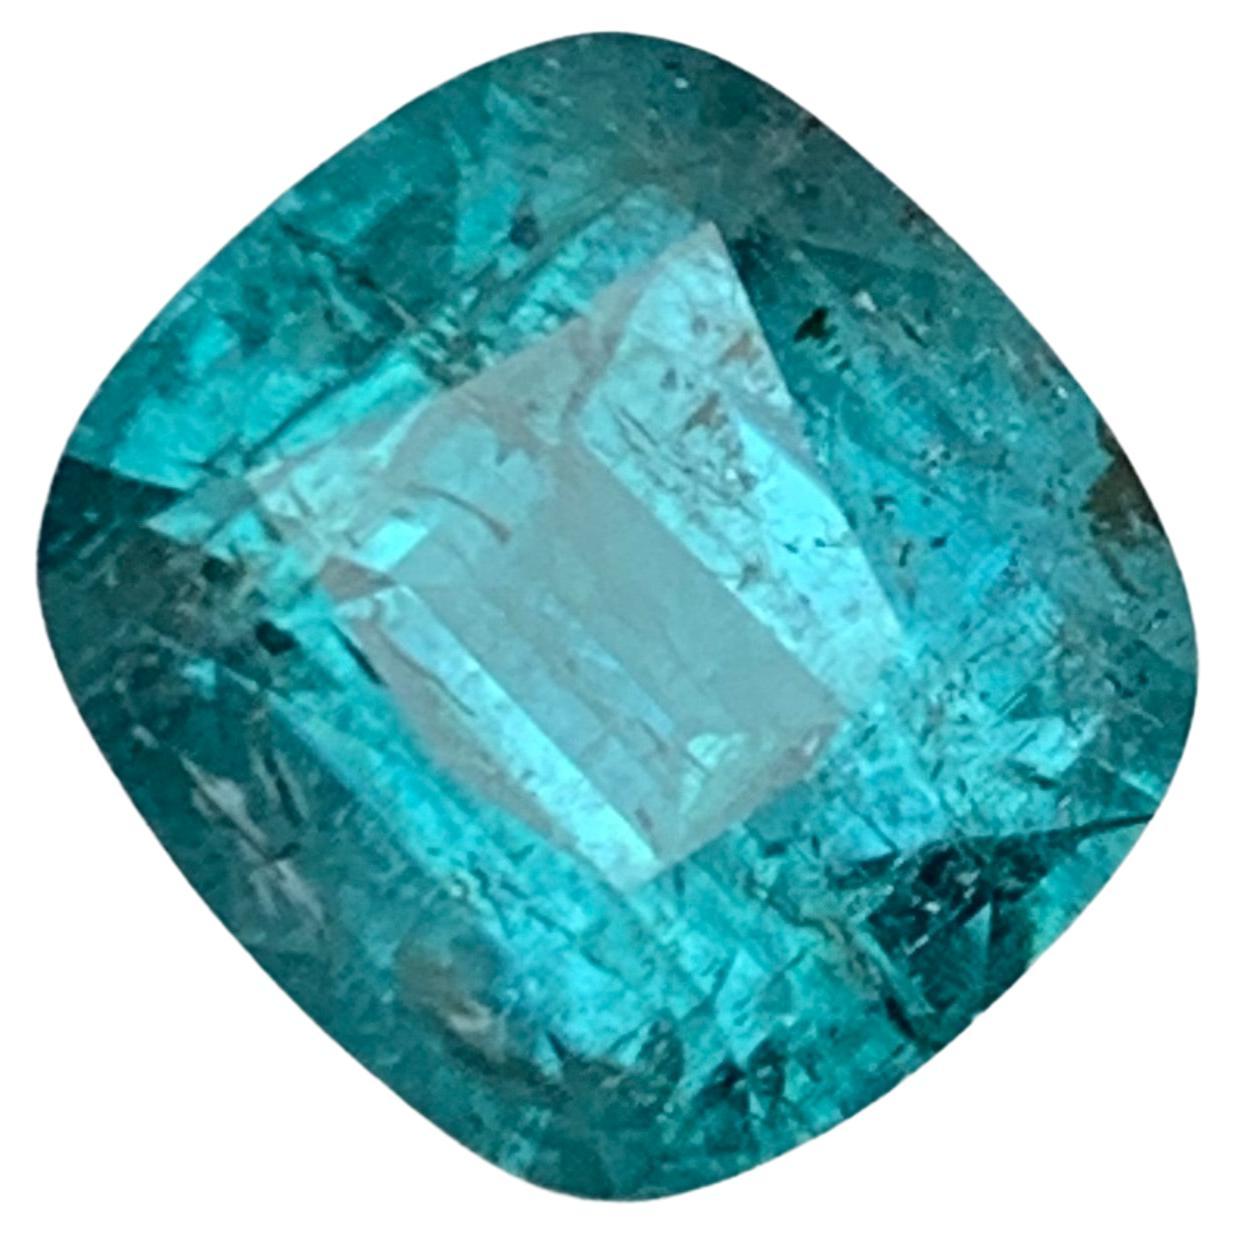 Pierre précieuse tourmaline naturelle bleue rare taille coussin de 6,25 carats pour bague/bijou 